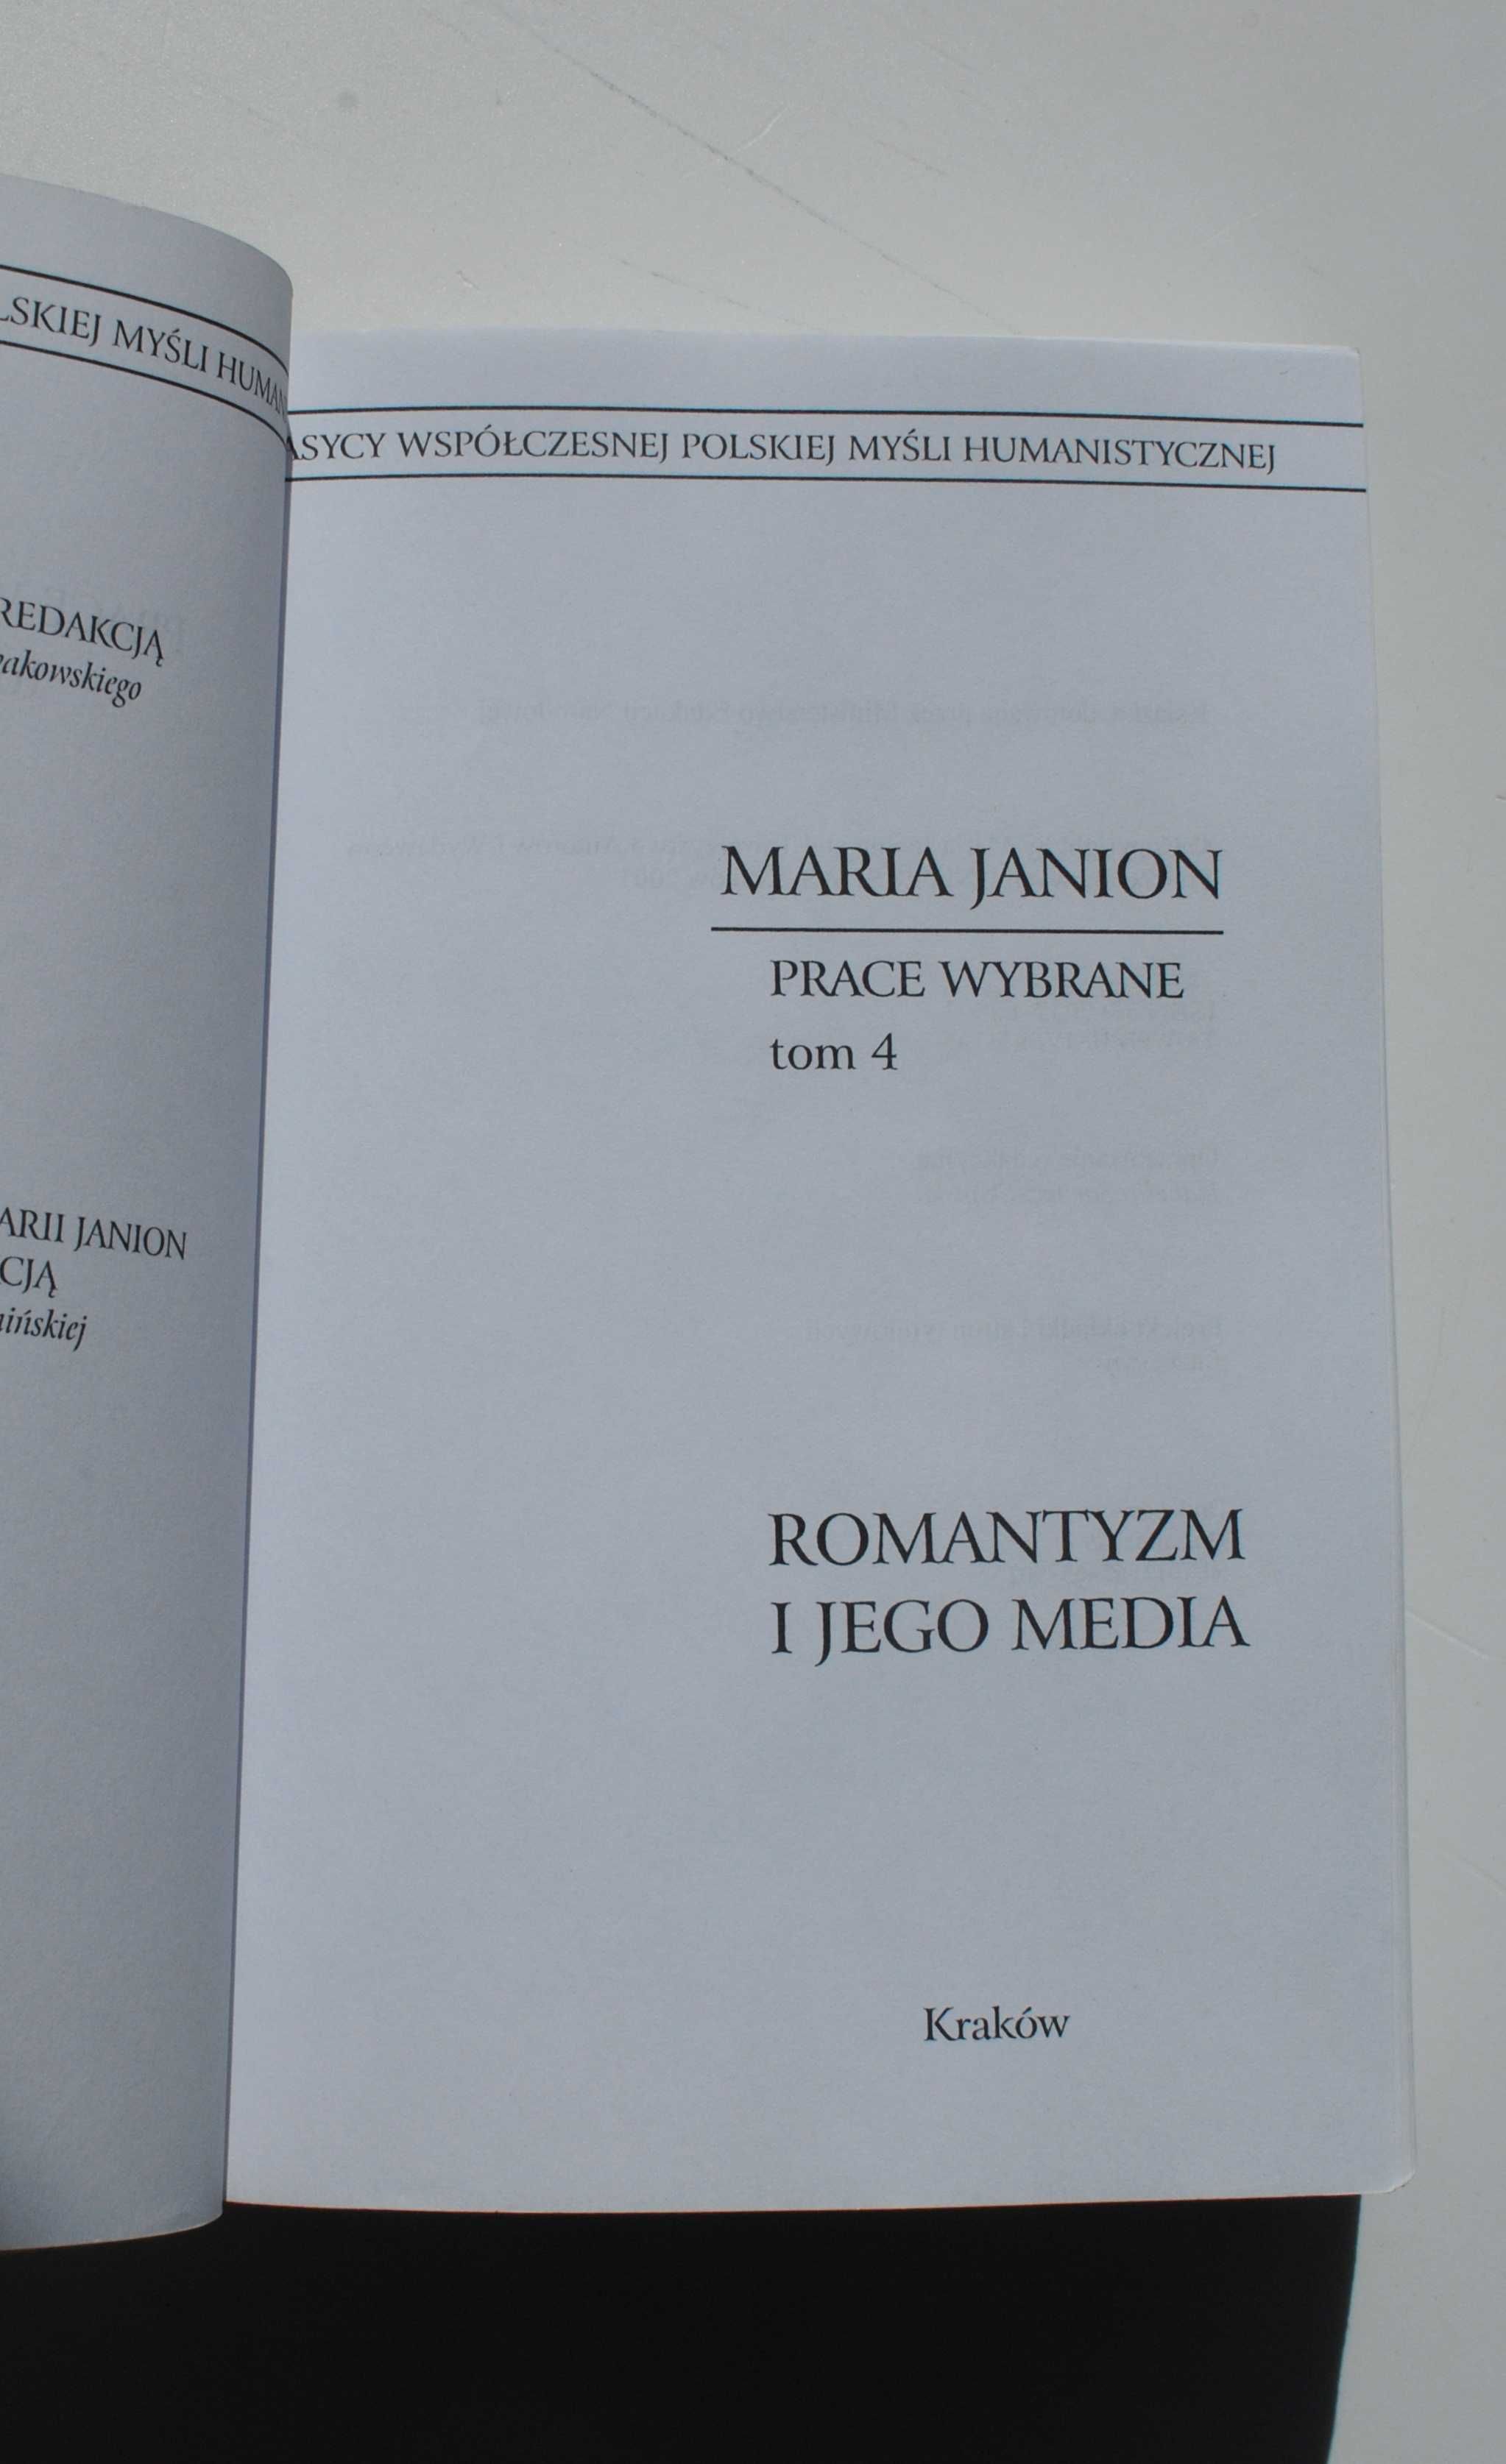 Maria Janion. Romantyzm i jego media